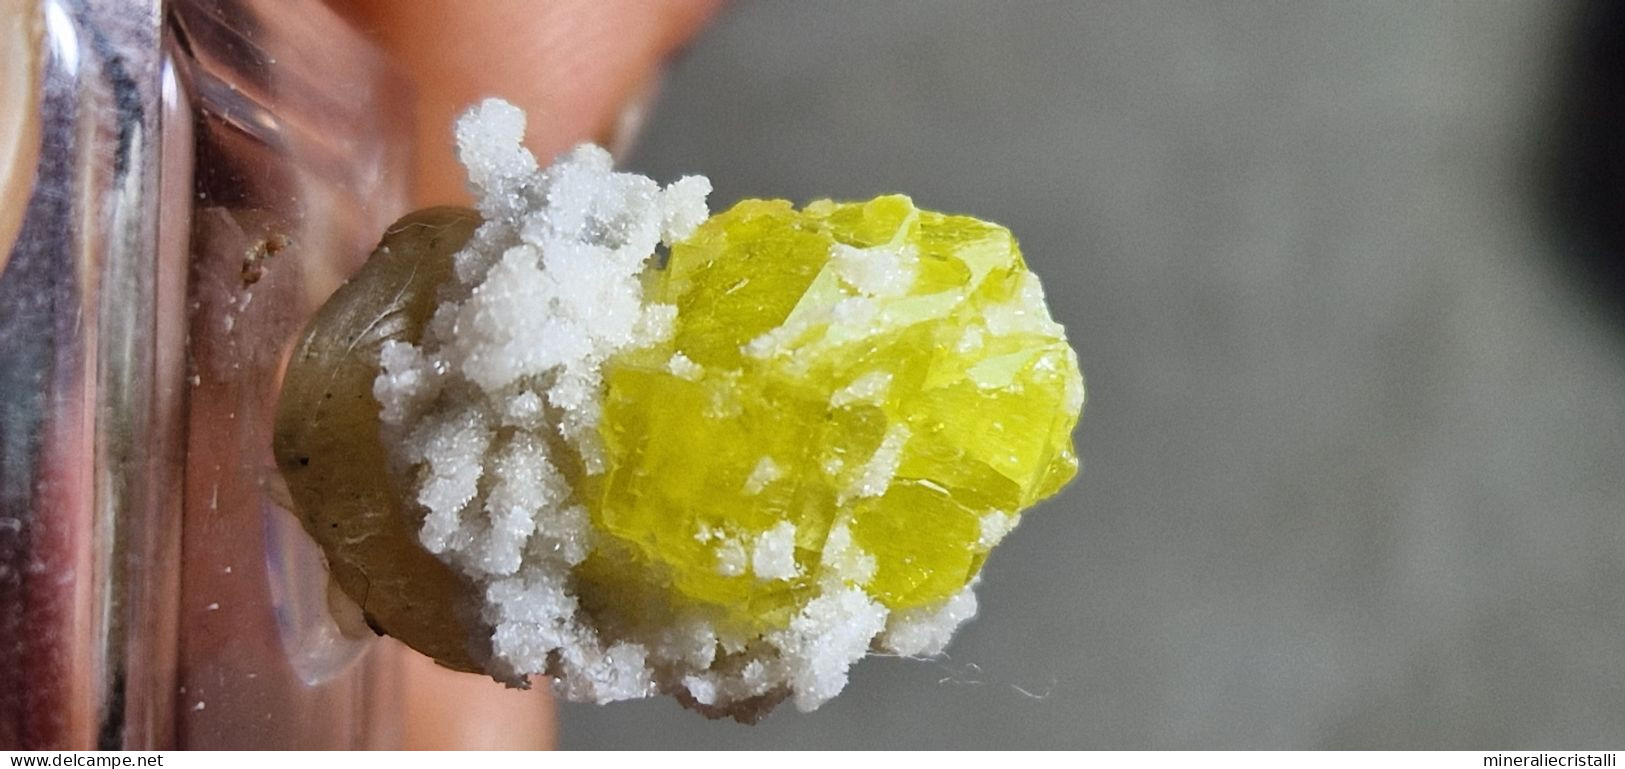 Zolfo cristallo singolo gemma Sicilia cozzodisi 1,83 gr